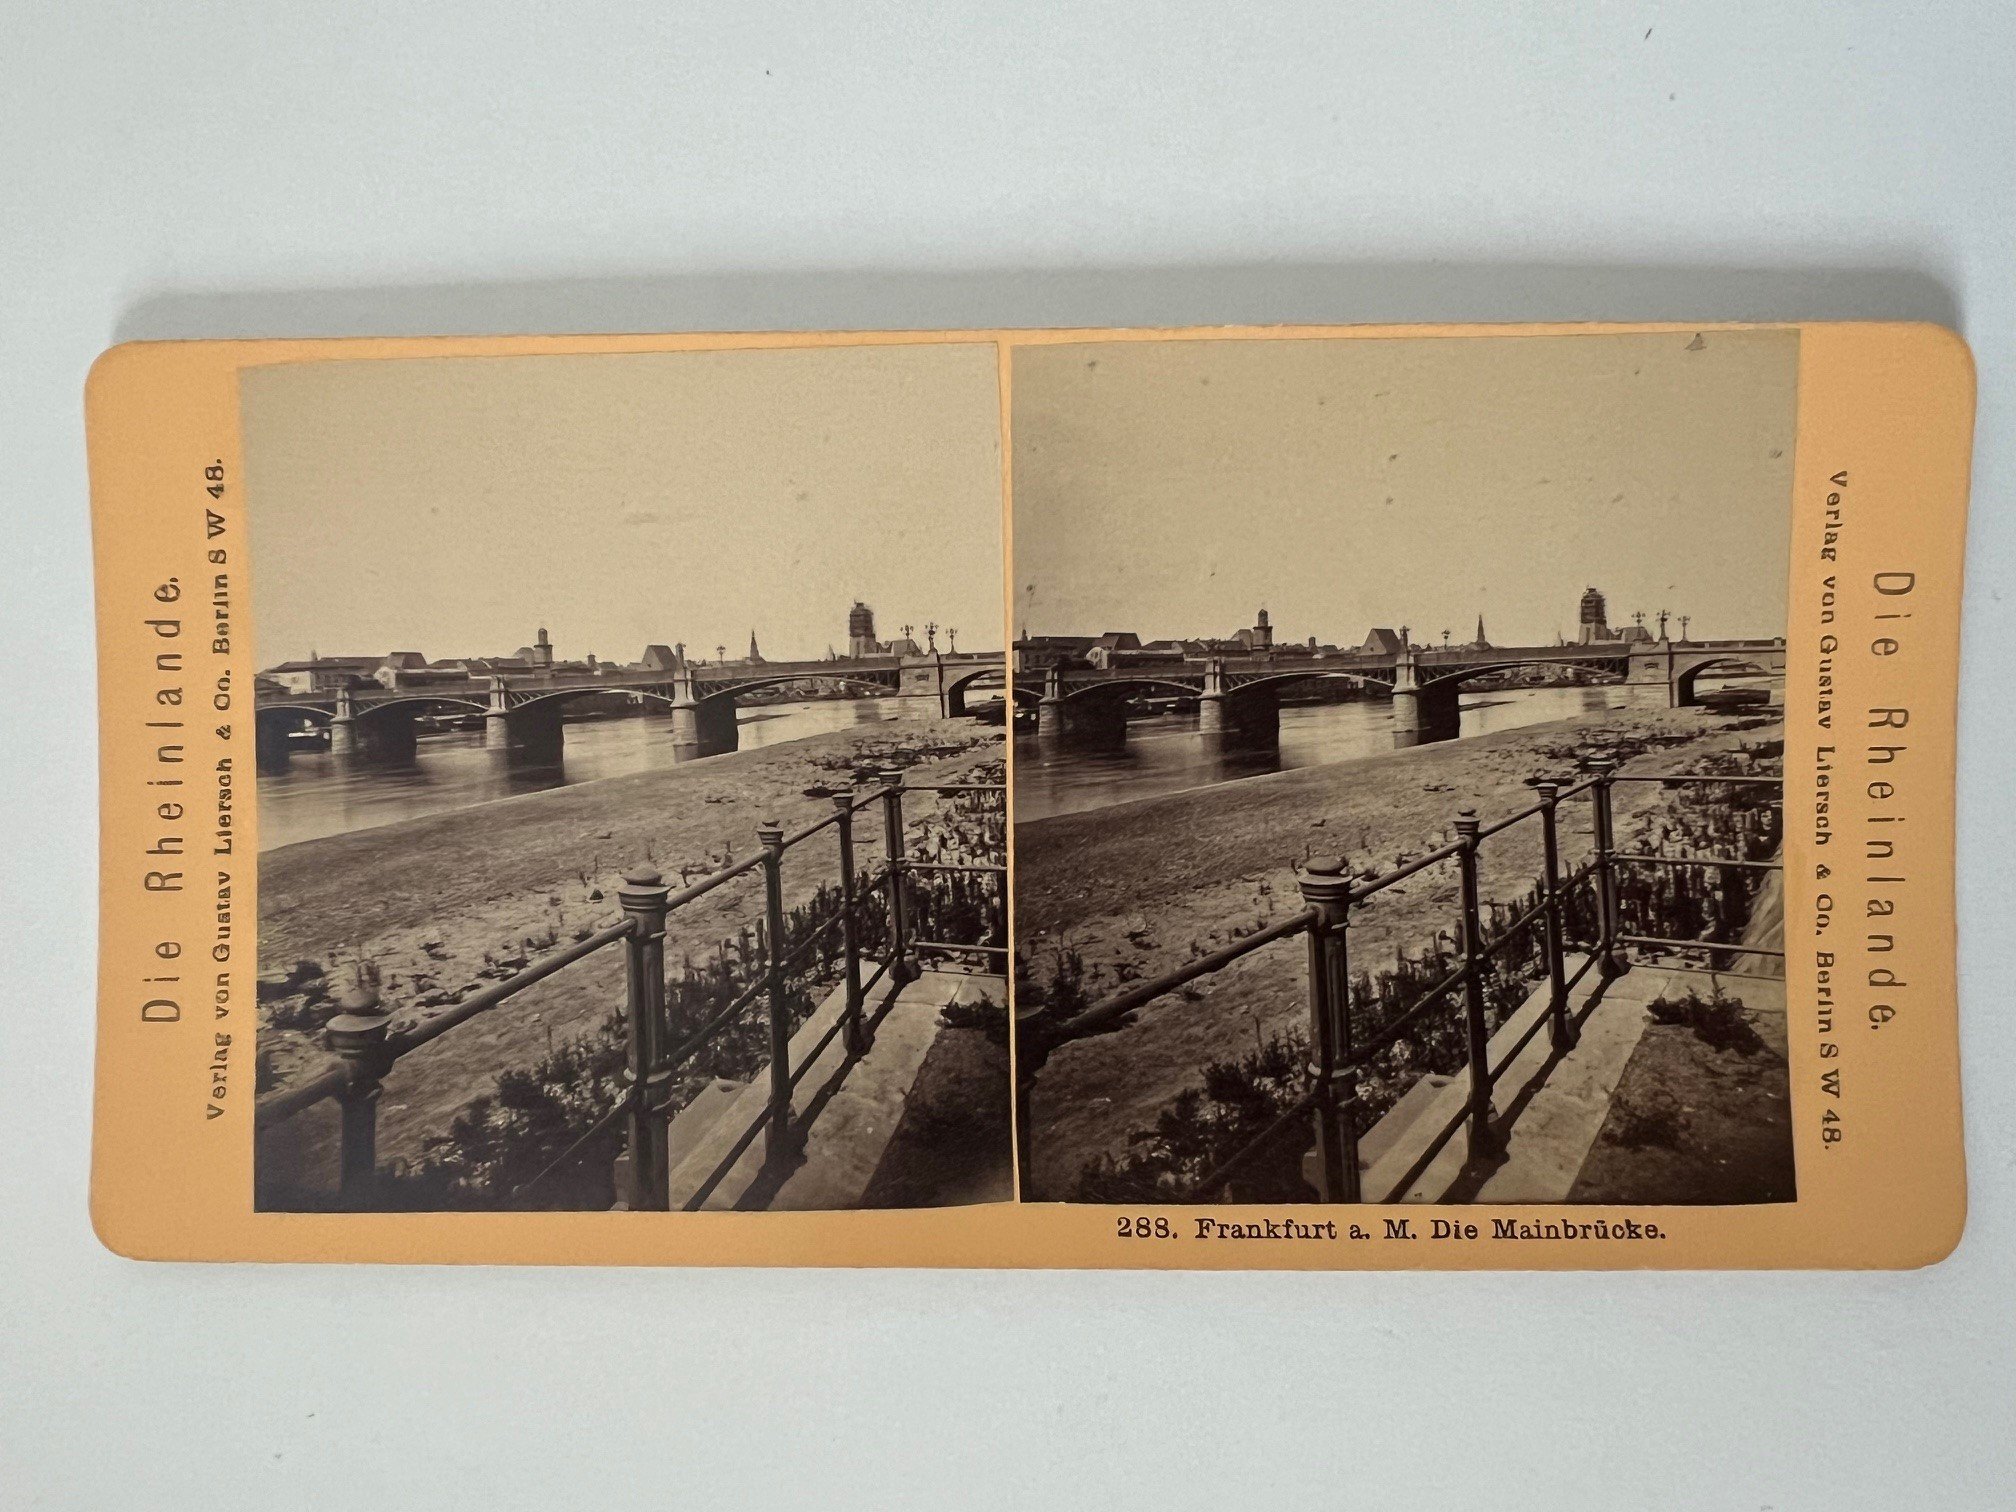 Stereobild, Verlag Gustav Liersch, Frankfurt, Nr. 288, Die Mainbrücke, ca. 1881. (Taunus-Rhein-Main - Regionalgeschichtliche Sammlung Dr. Stefan Naas CC BY-NC-SA)